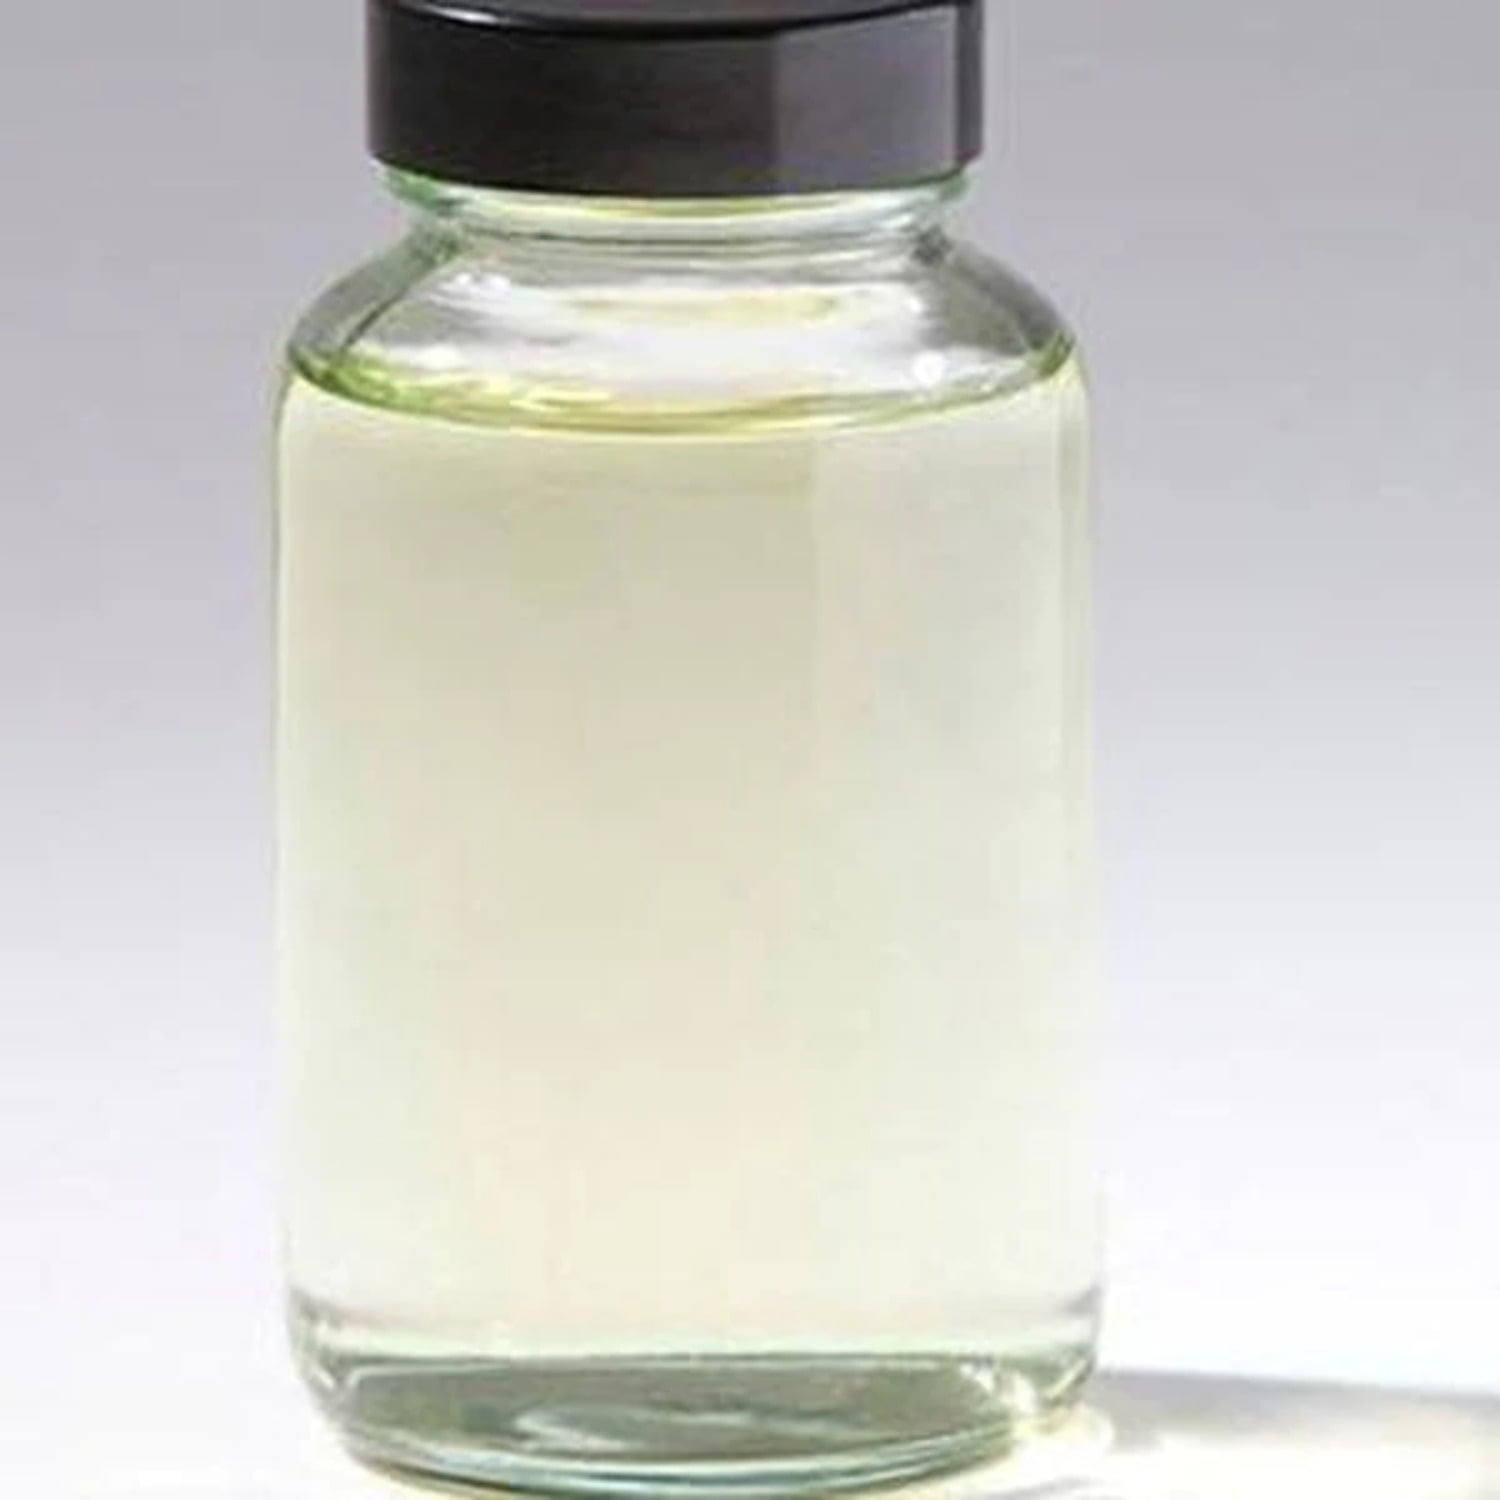 Основа для геля для душа. Peg-7 Glyceryl Cocoate. Гель для душа с глицерином. Жидкий натуральный продукт белого цвета.